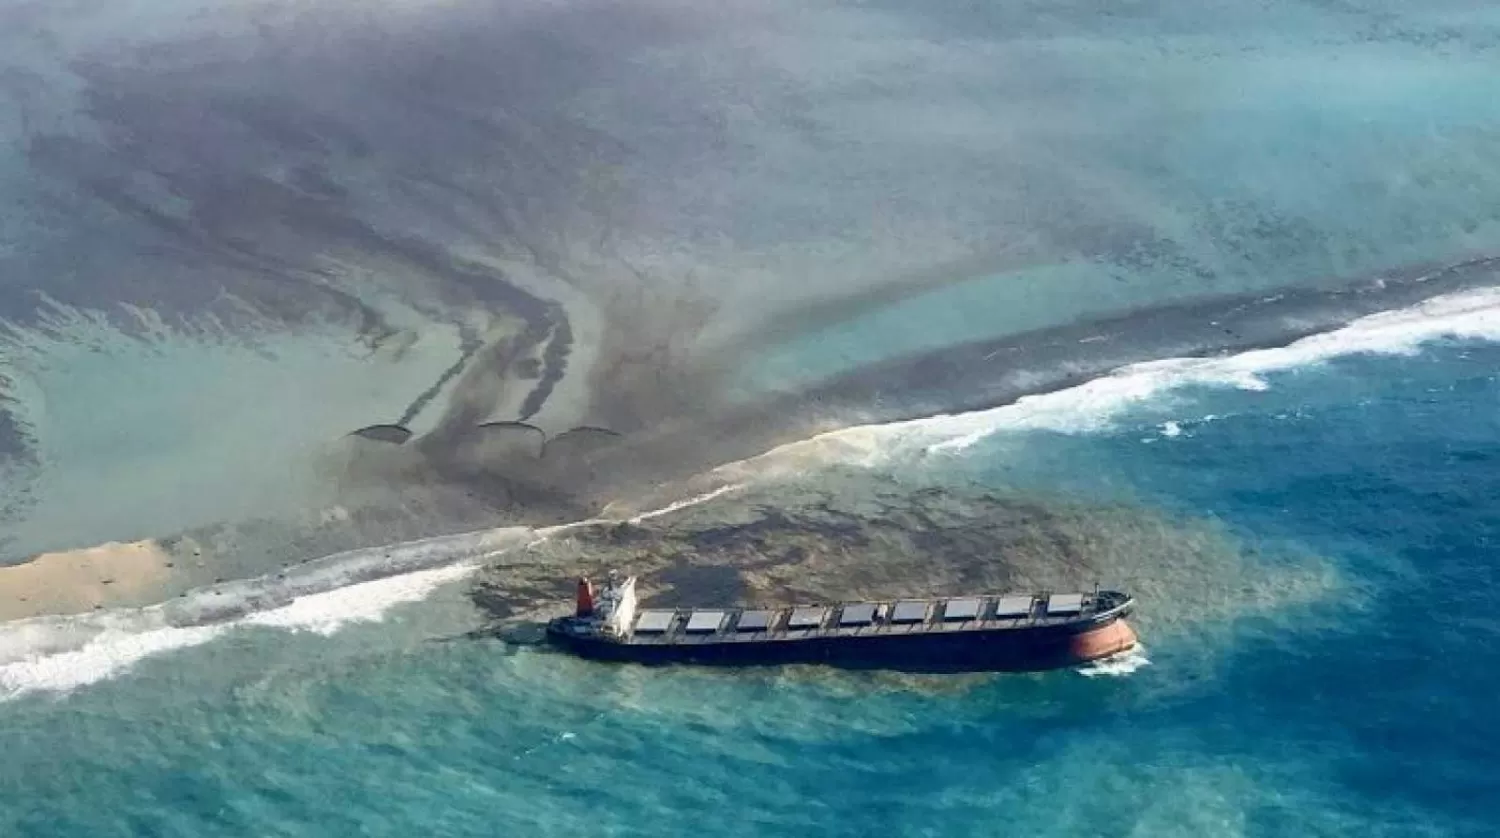 EMERGENCIA. El buque petrolero se partió y contamina las aguas oceánicas frente a la isla Mauricio. Foto: La República